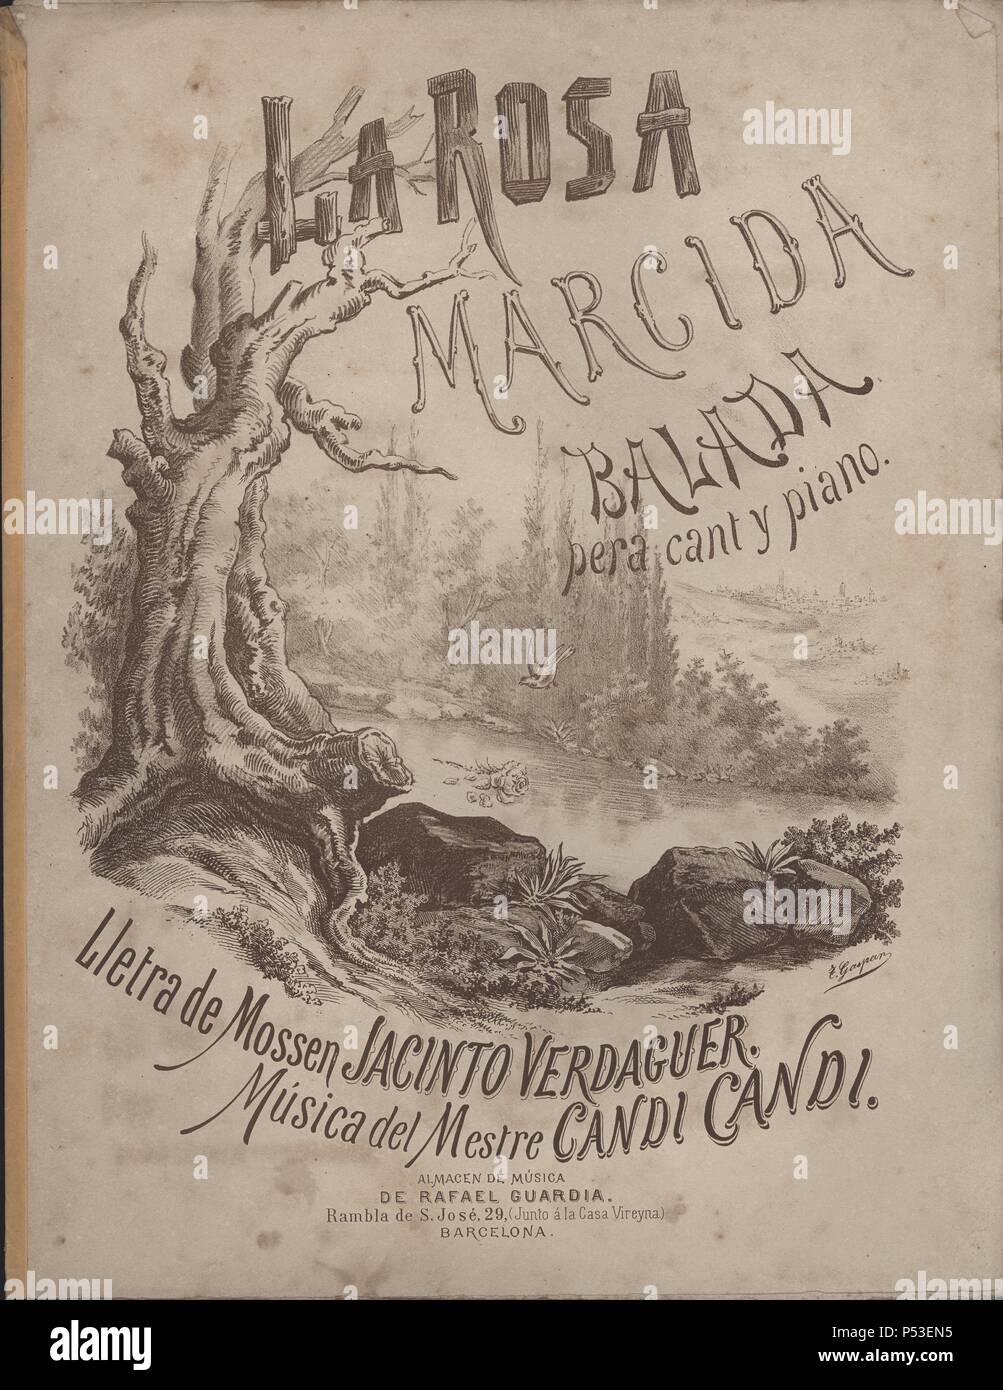 Partitura musical del balada 'La Rosa marcida', letra de Mossén Jacinto Verdaguer, música del maestro Cándido Candi (1844-1911). Barcelona, 1895. Stock Photo